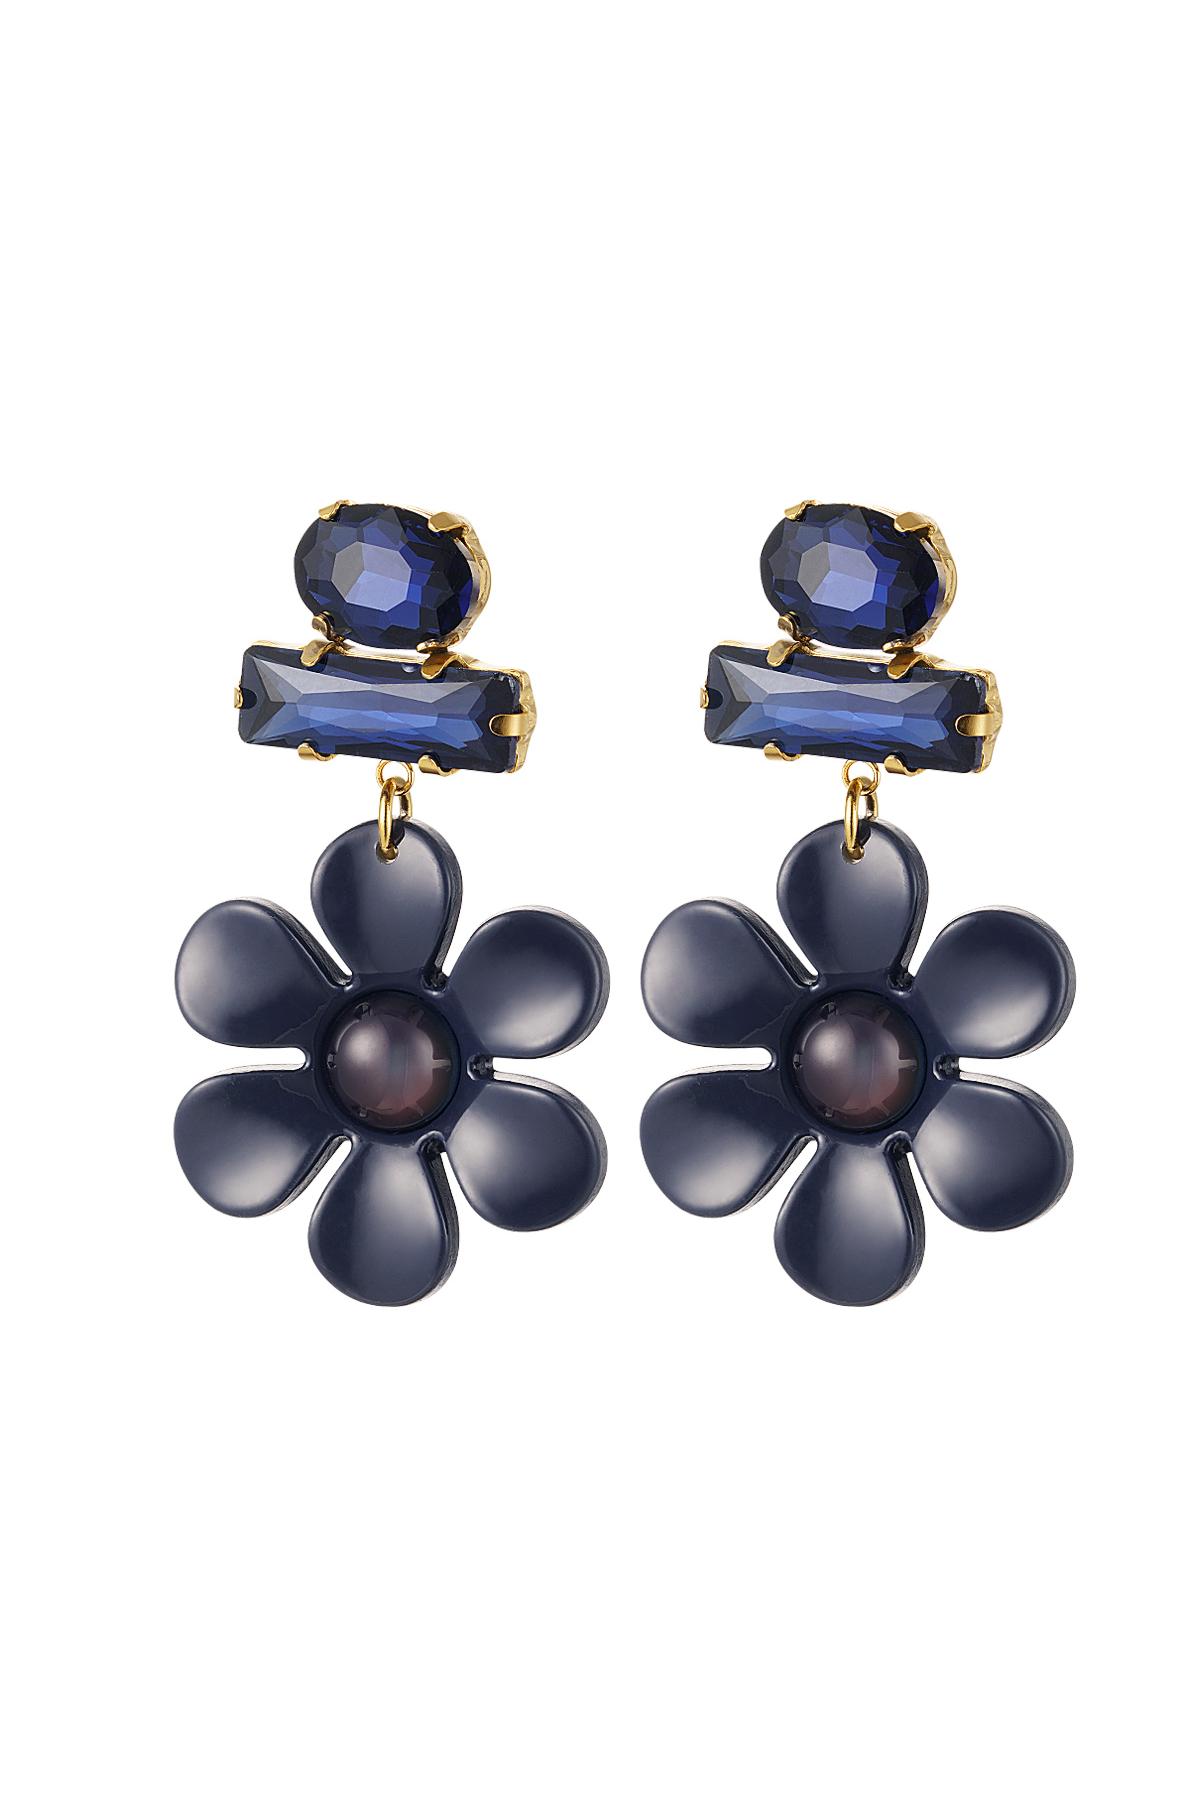 Boucles d'oreilles fleur avec perles de verre Bleu & Or Acier inoxydable 